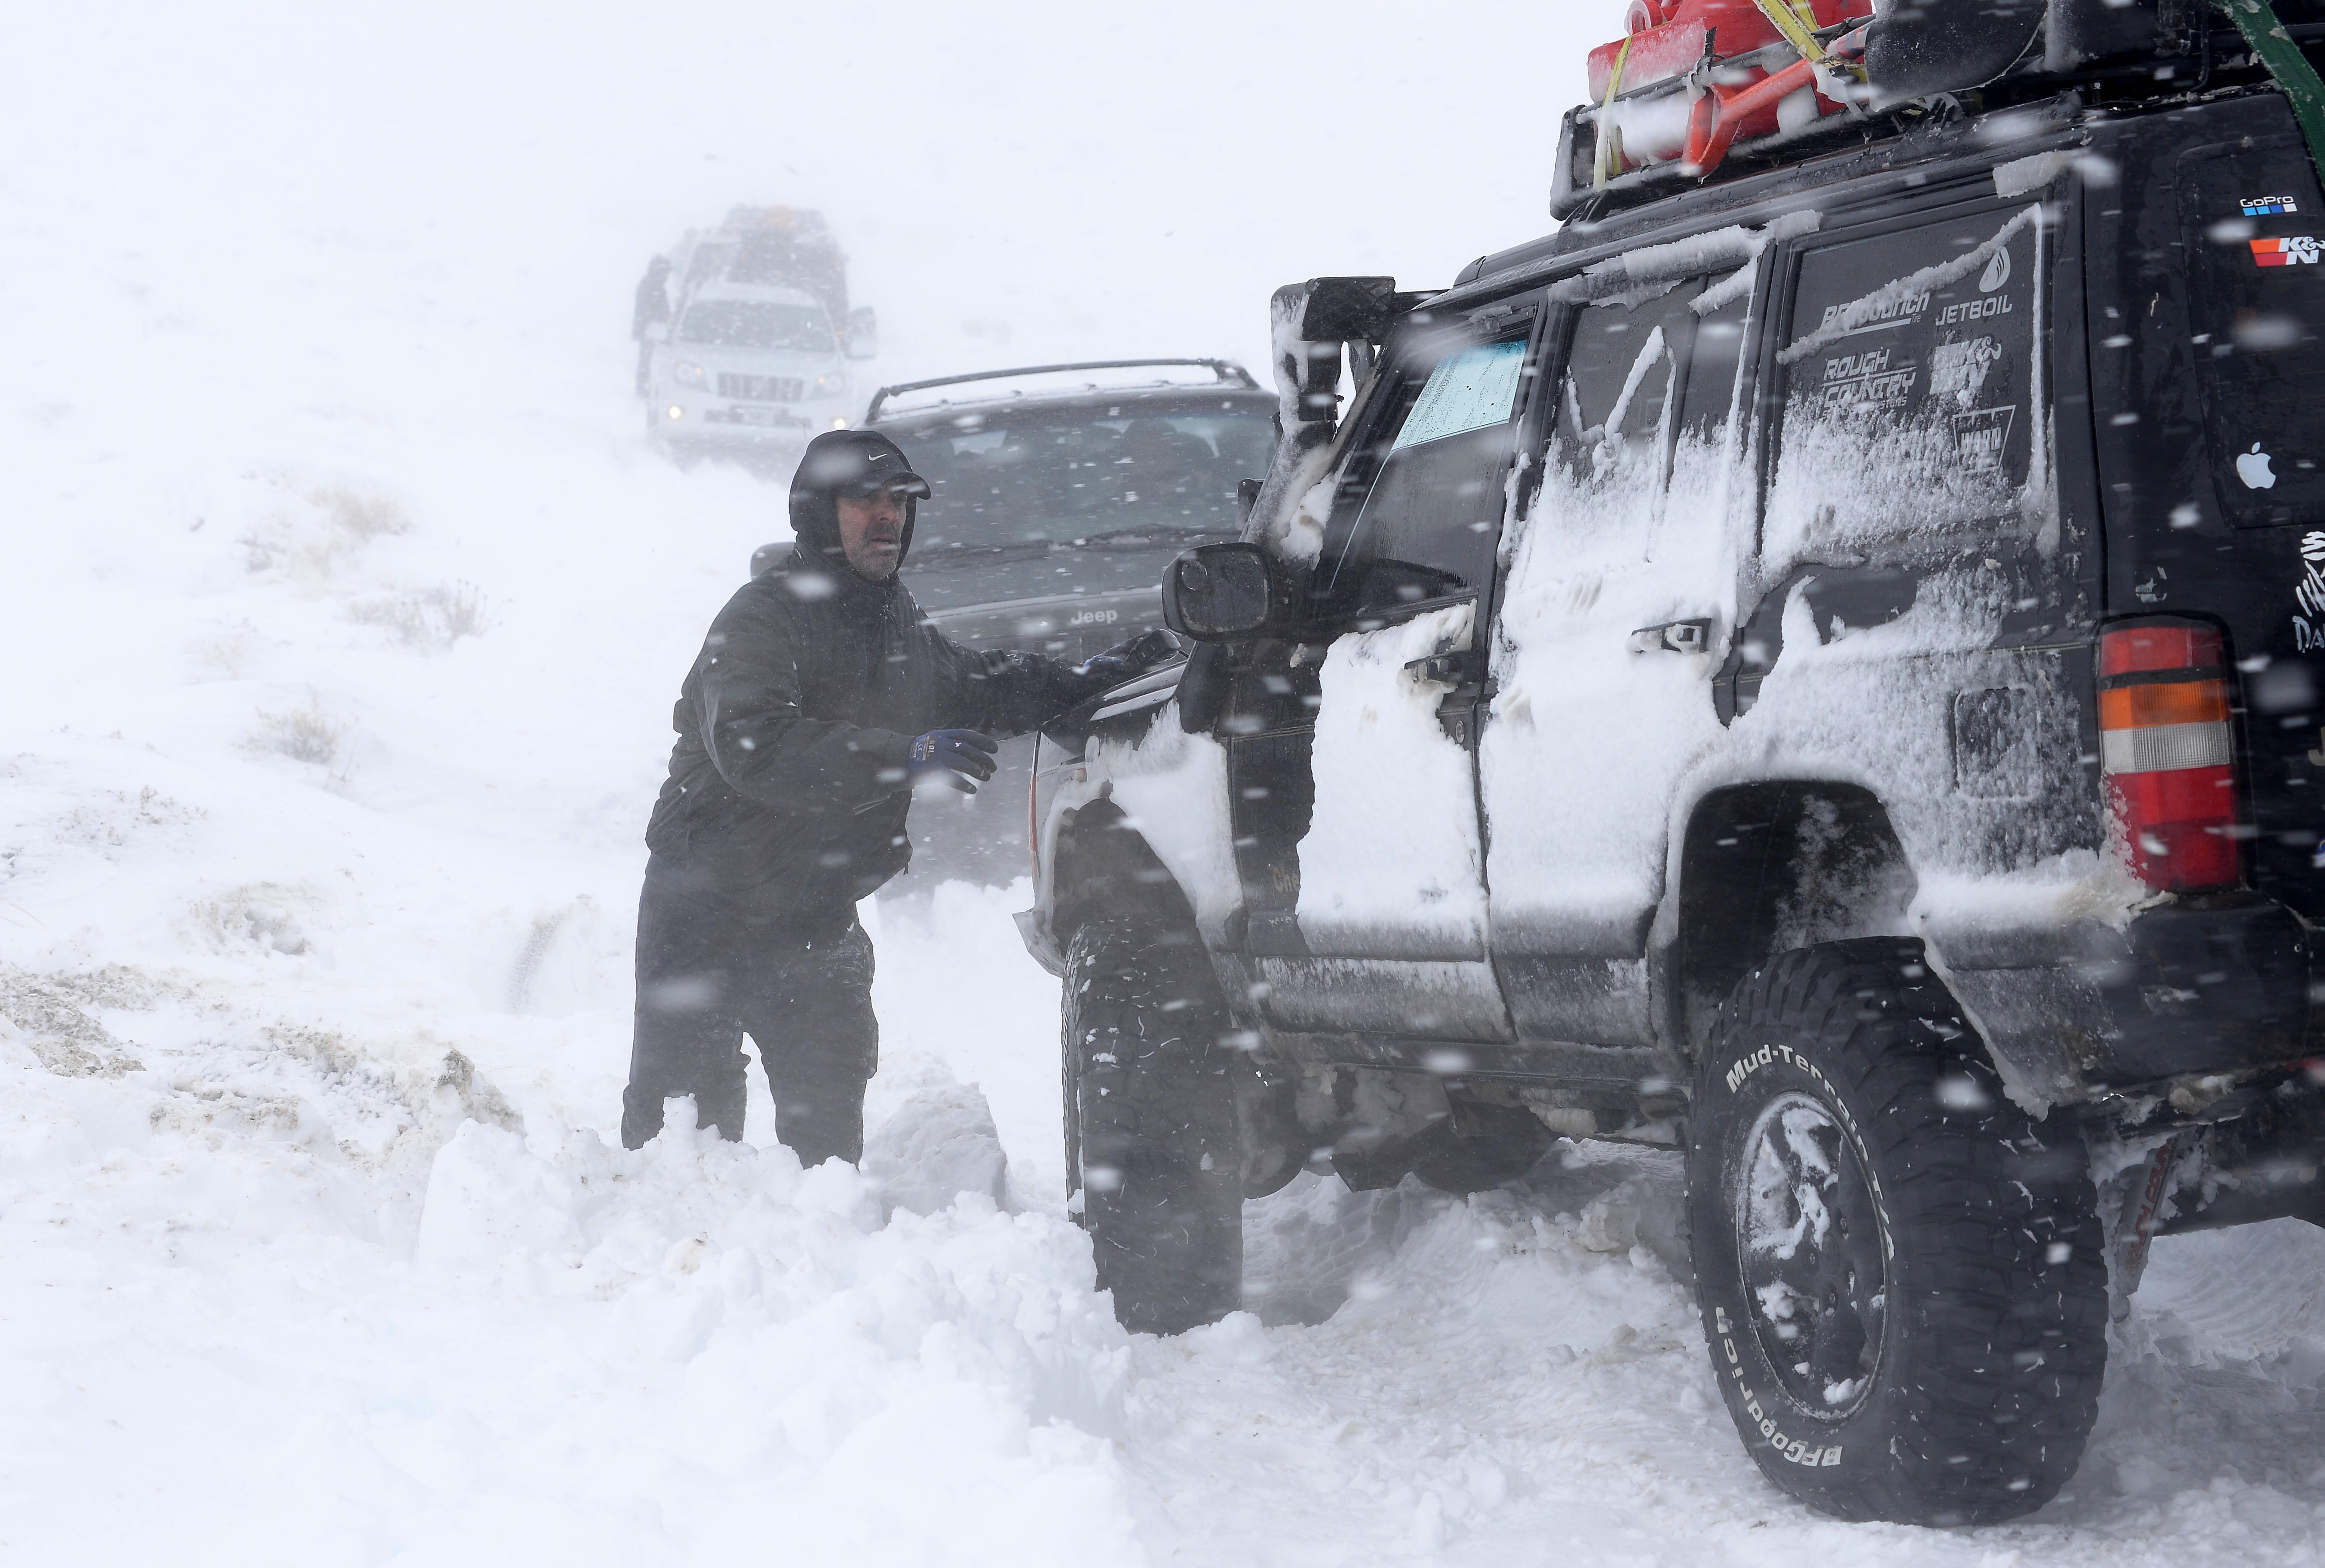 La caravana solidaria que partió de Bariloche tuvo que hacer en dos días el viaje porque un temporal de nieve hizo imposible llegar a destino en la primera jornada. (Foto Alfredo Leiva)